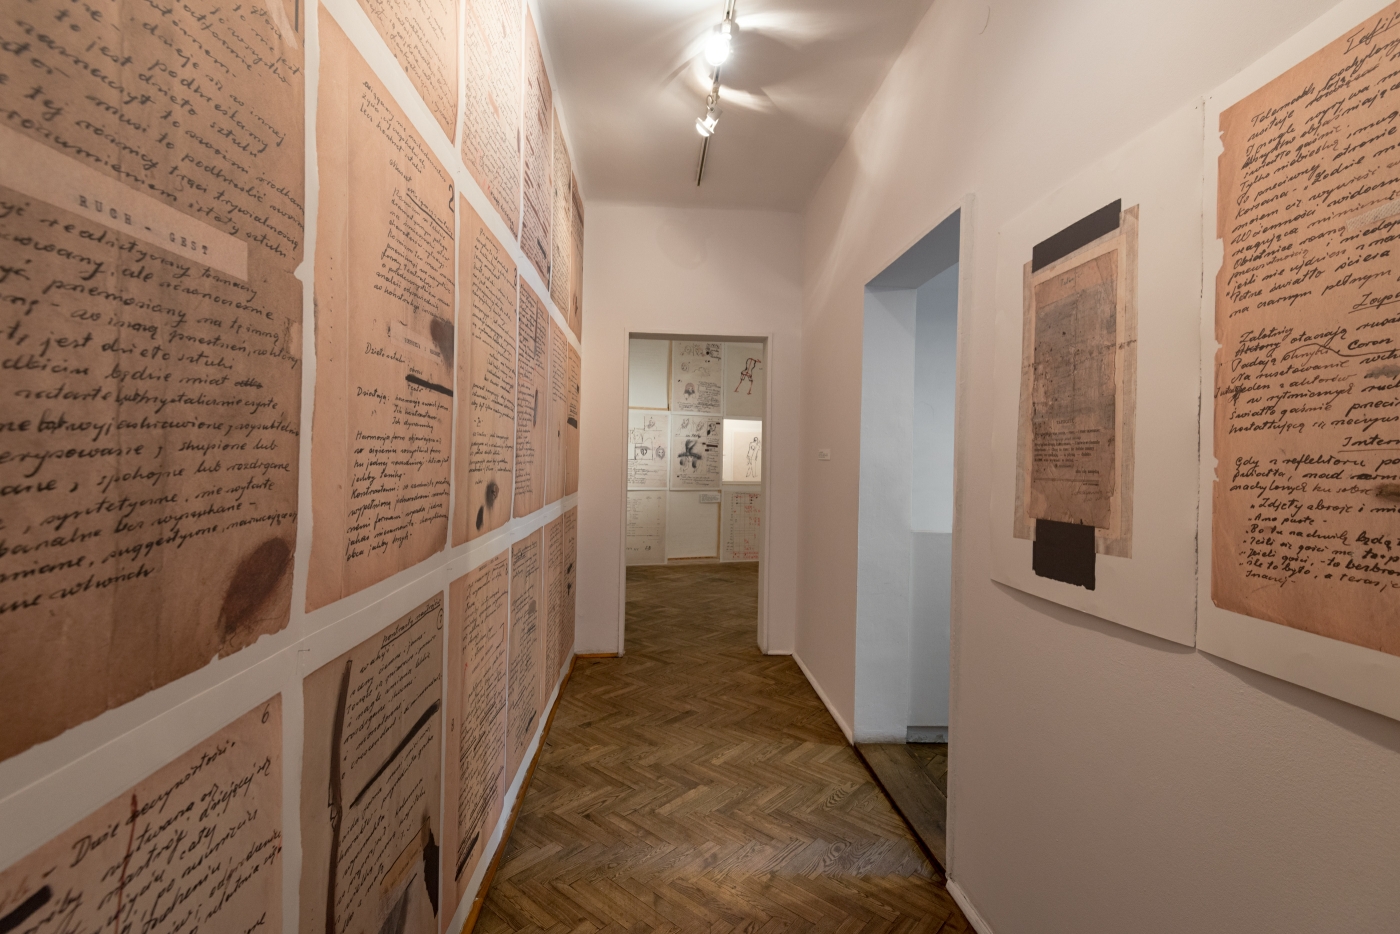 Tadeusz Kantor, Brudnopisy, widok wystawy, Galeria Foksal 2015